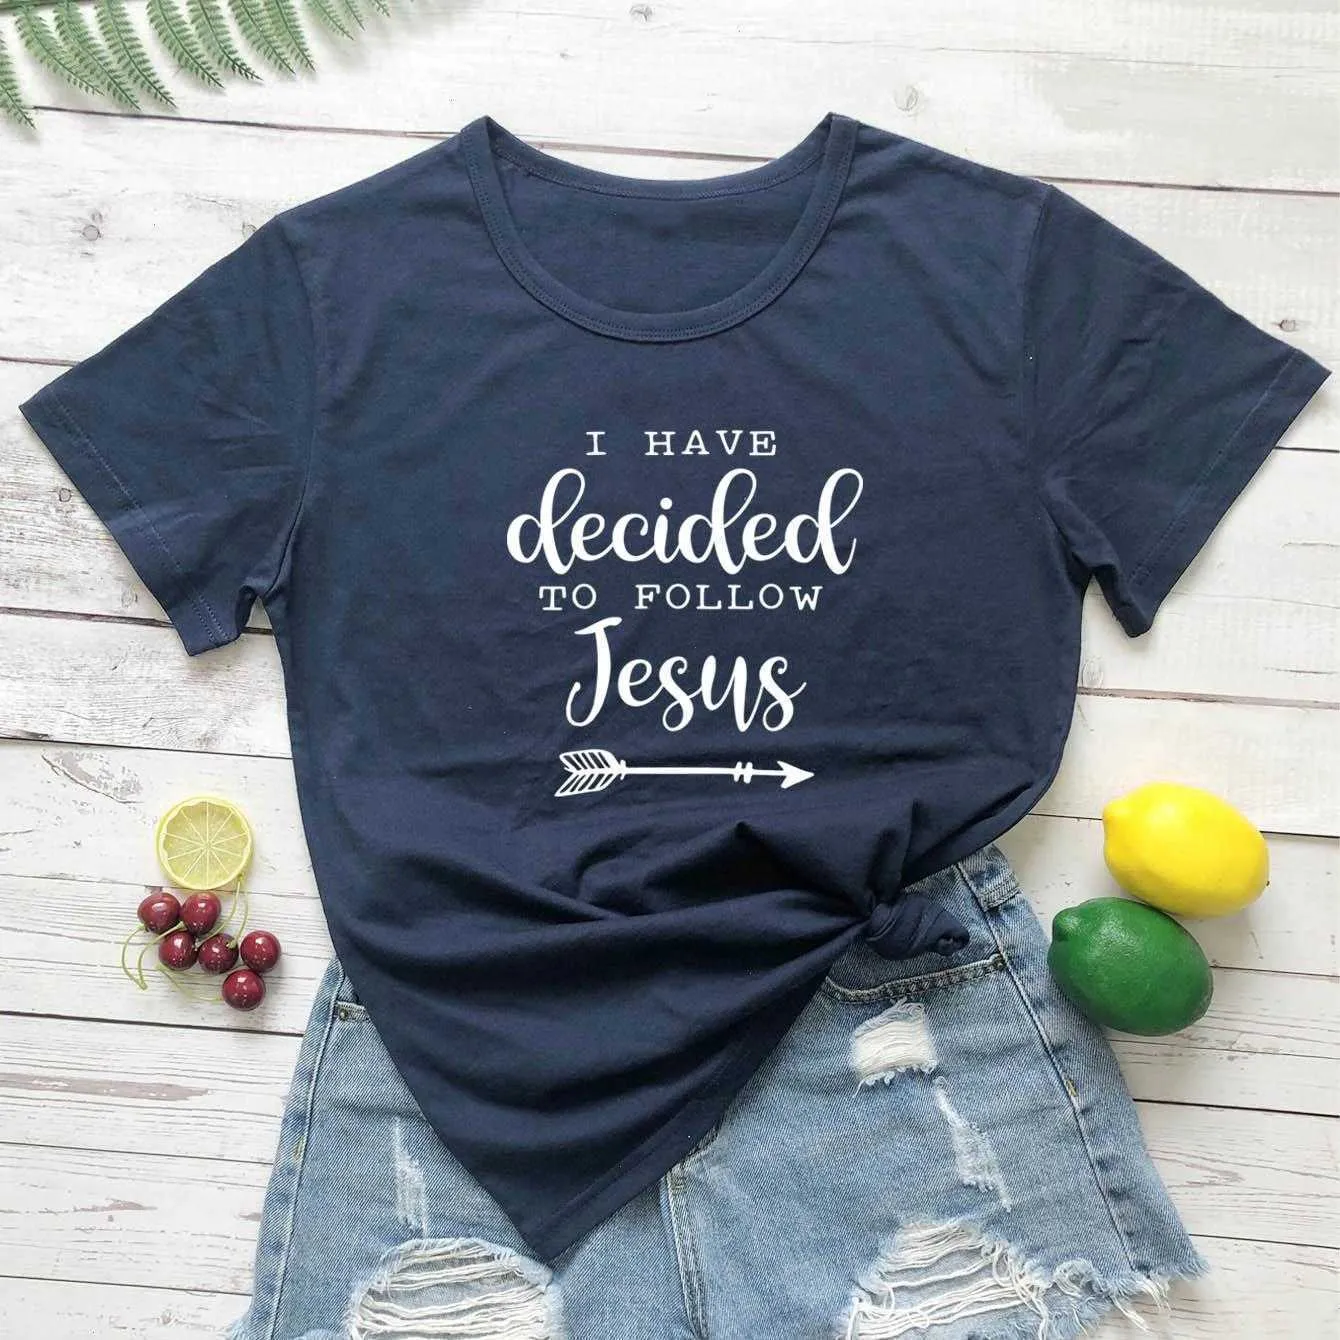 나는 예수 T 셔츠 슬로건 패션 기독교 성경 침례 티를 따르기로 결정했습니다.